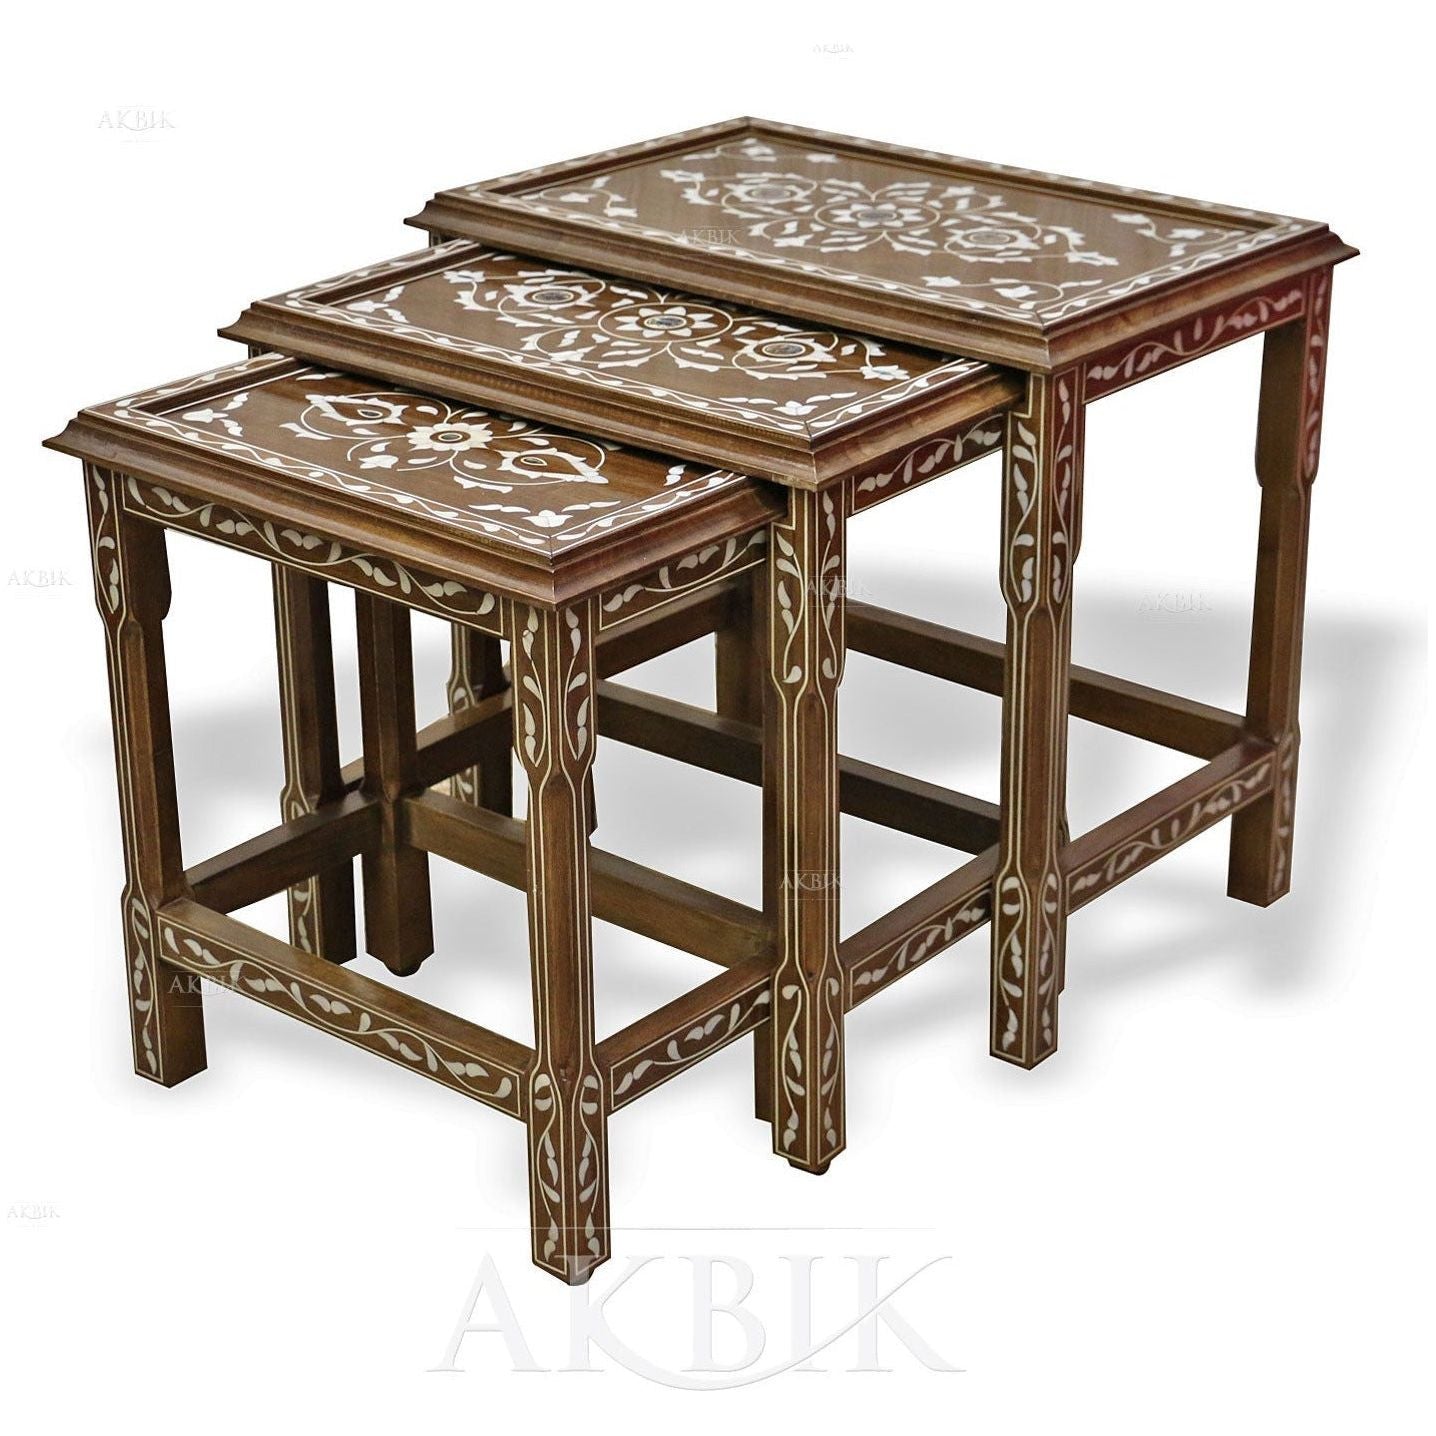 MORROCAN DESERT ROSE NESTING TABLES SET - AKBIK Furniture & Design